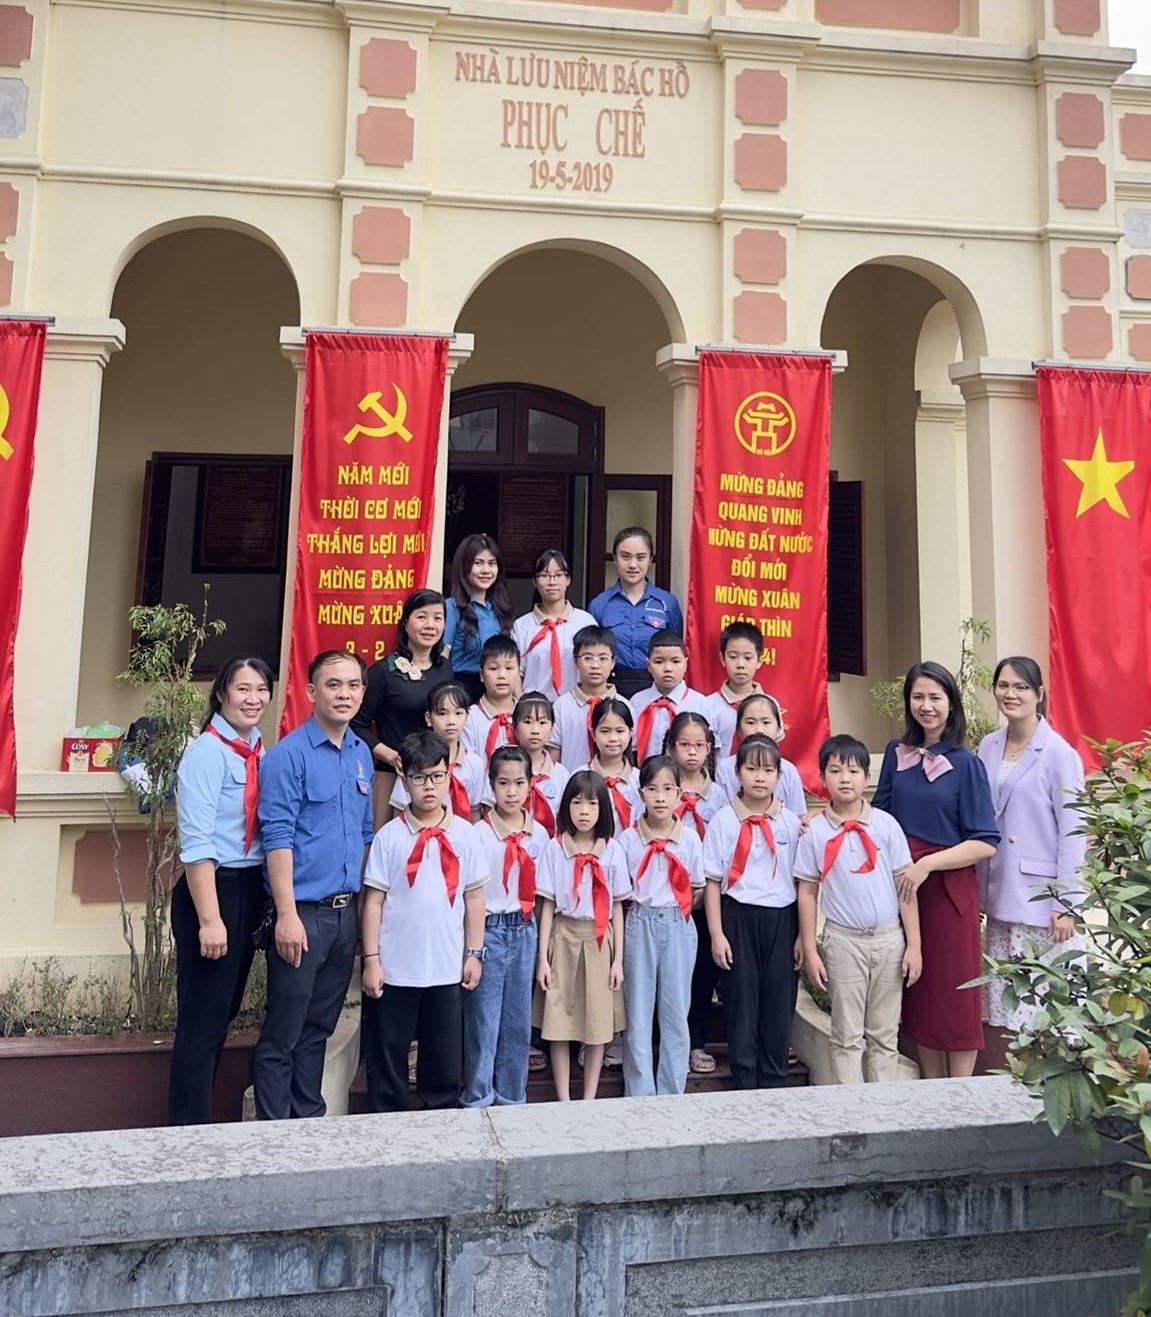 Liên đội trường Tiểu học Vân Canh tổ chức kết nạp Đội viên mới